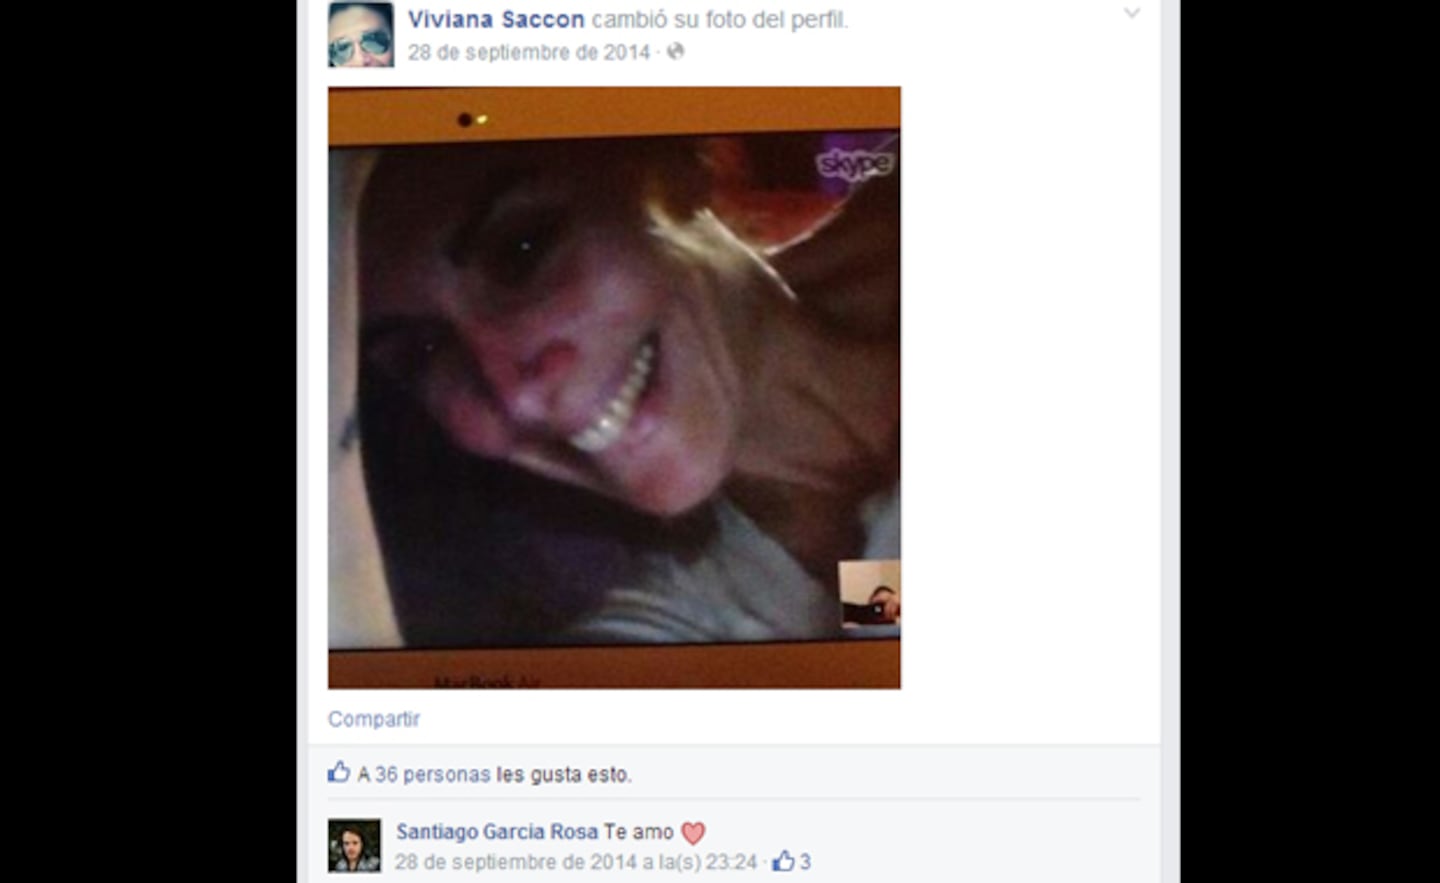 Viviana Saccone y Santiago García Rosa blanquearon su amor en las redes sociales (Foto: Facebook)